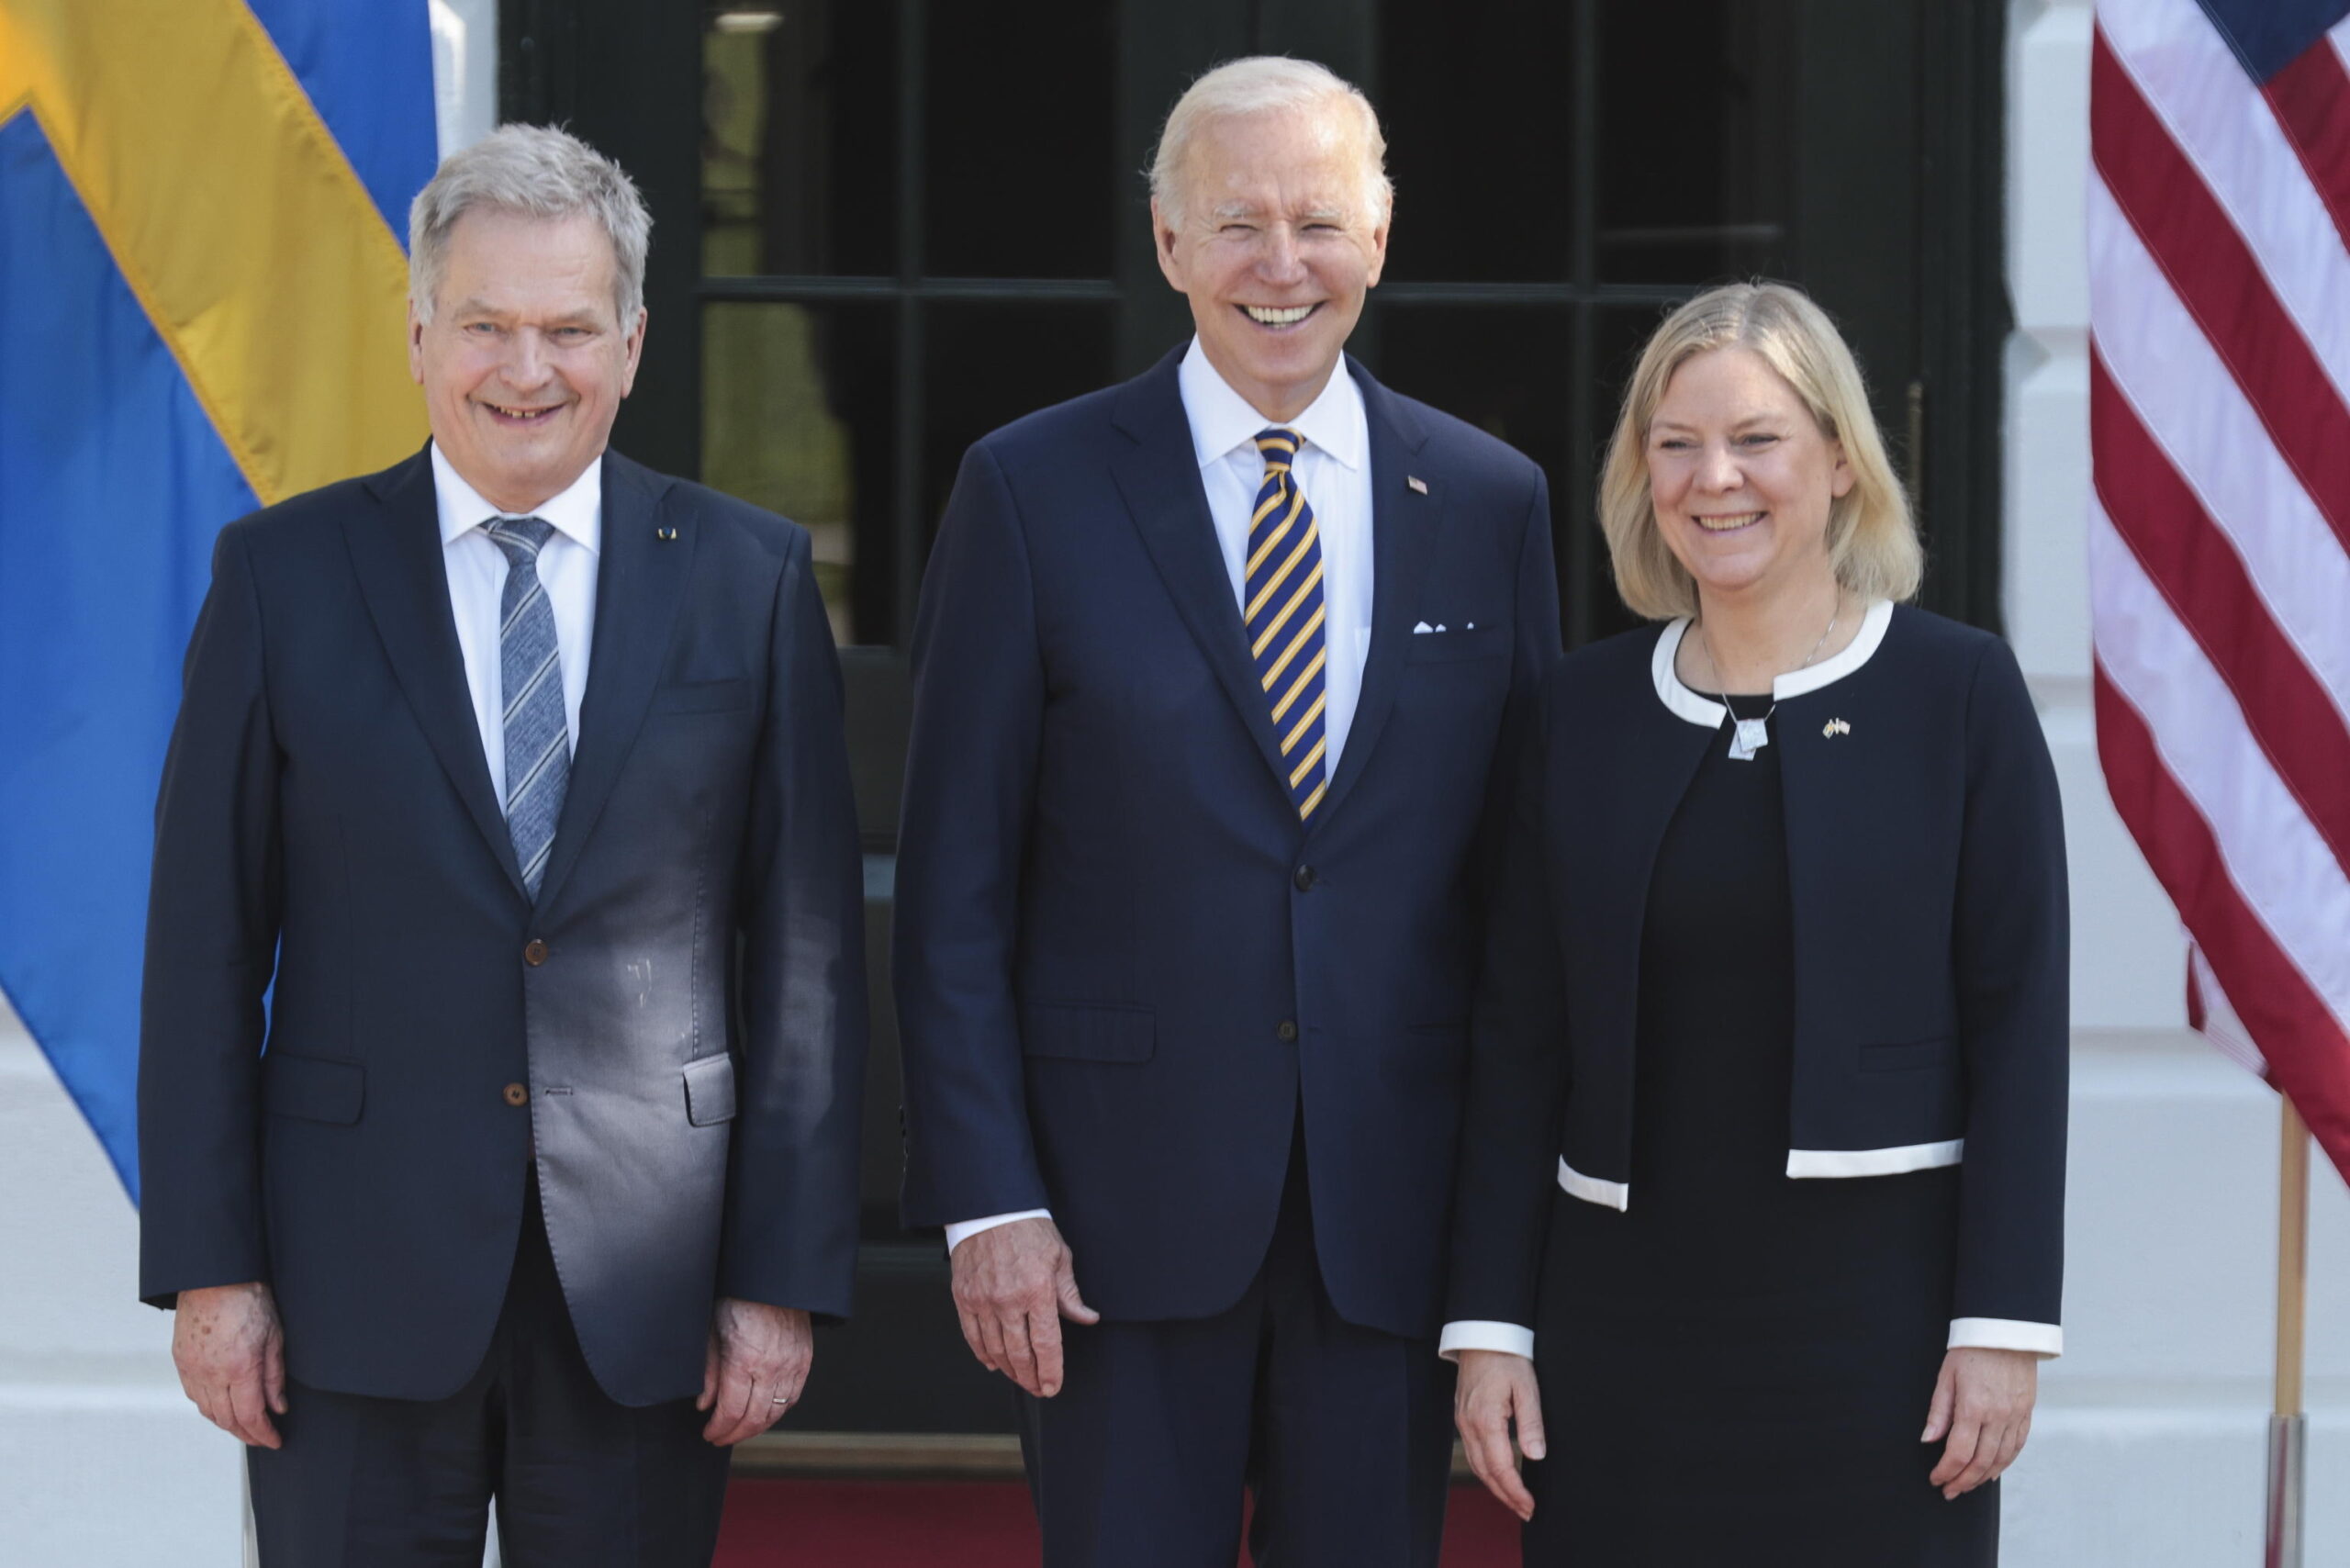 Biden incontra i leader di Svezia e Finlandia: le porte della Nato sono aperte